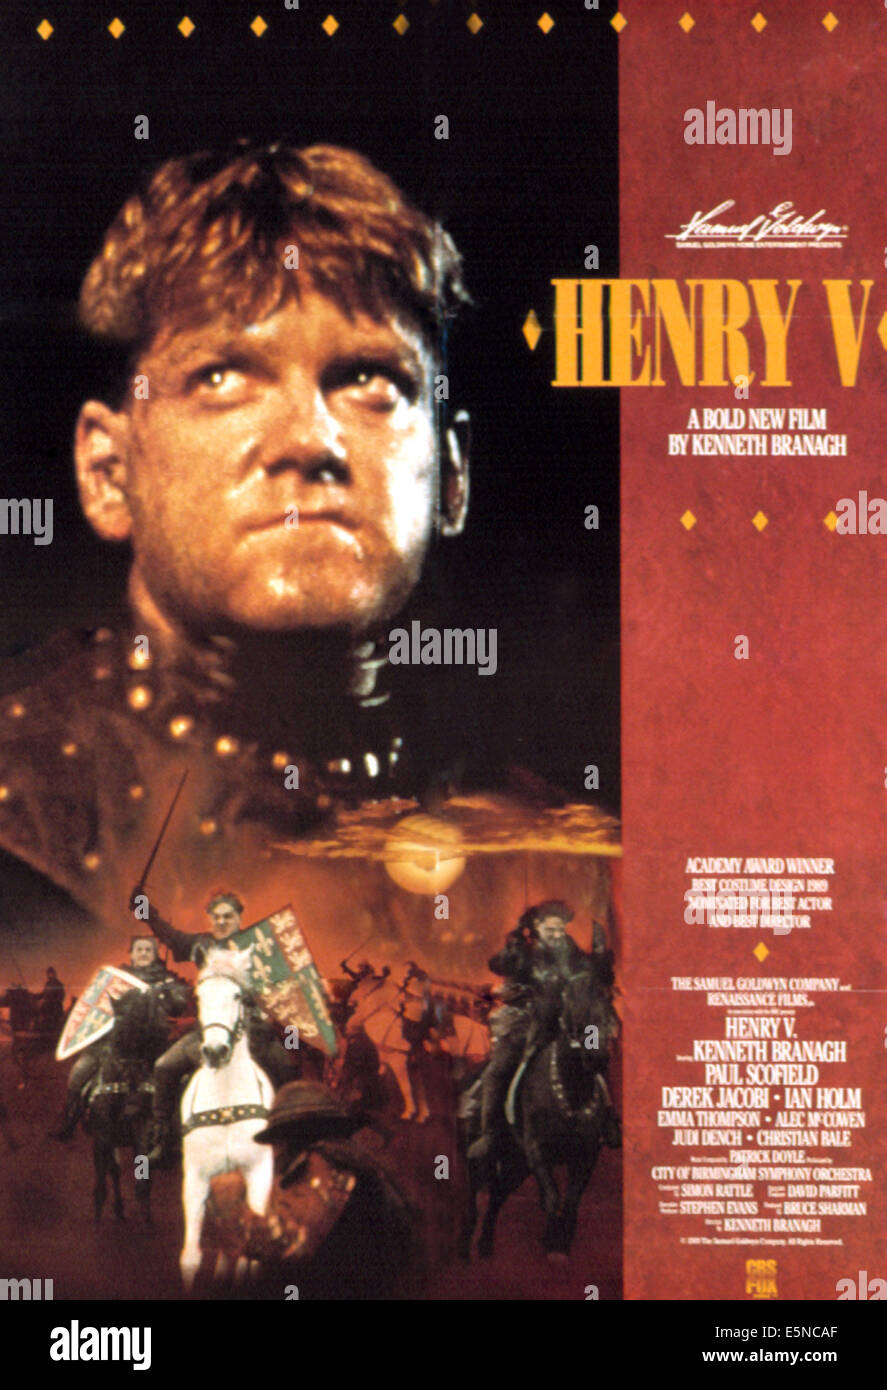 HENRY V, de Kenneth Branagh, 1989, (c) Samuel Goldwyn/avec la permission d'Everett Collection Banque D'Images